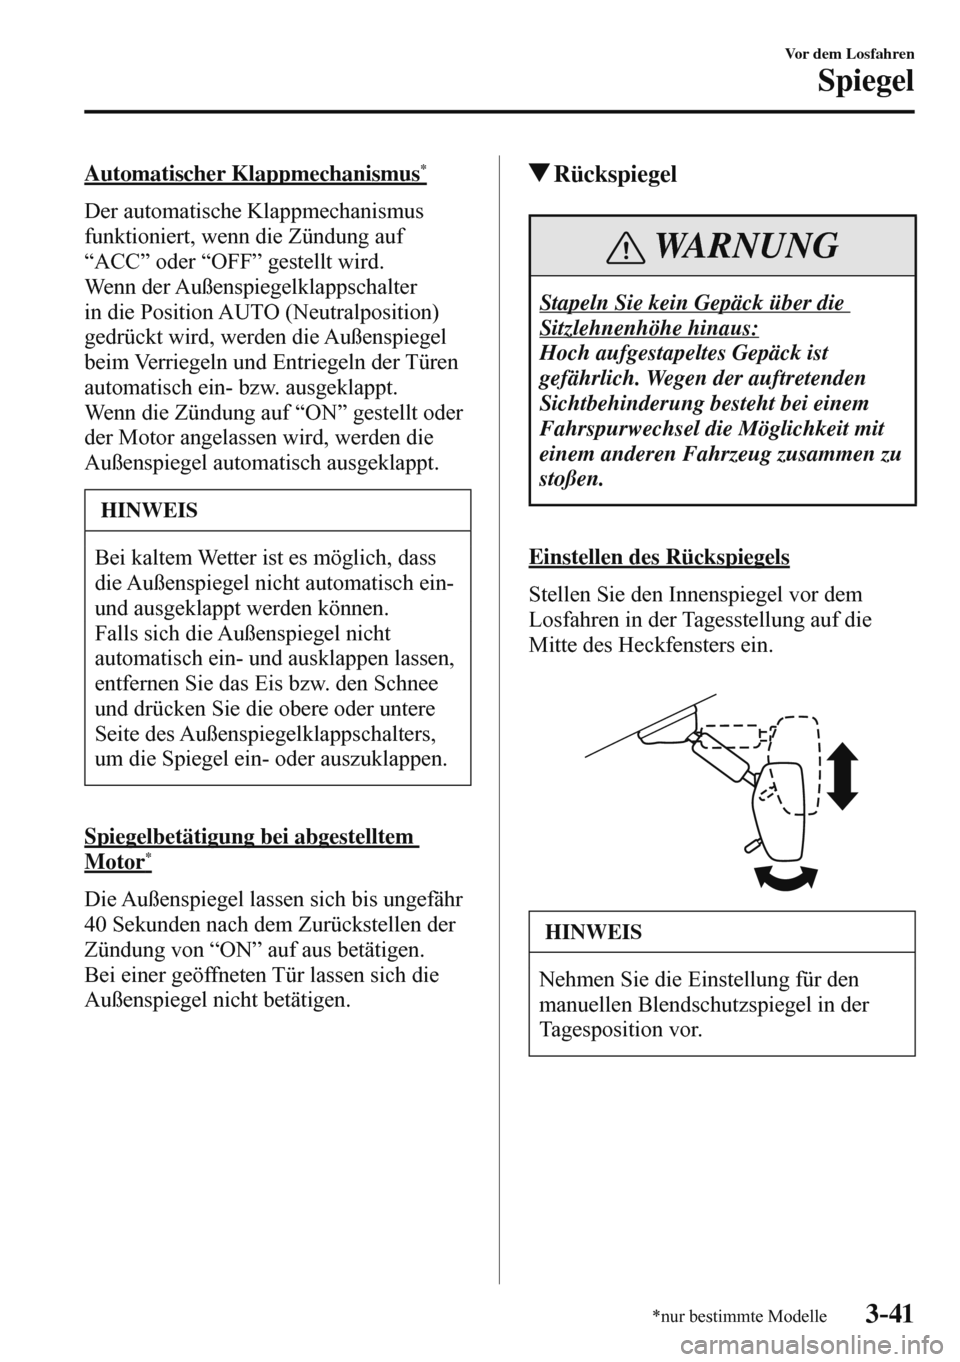 MAZDA MODEL 3 HATCHBACK 2016  Betriebsanleitung (in German) 3–41
Vor dem Losfahren
Spiegel
*nur bestimmte Modelle
  Automatischer  Klappmechanismus *
    Der  automatische  Klappmechanismus 
funktioniert, wenn die Zündung auf 
“ACC” oder “OFF” geste